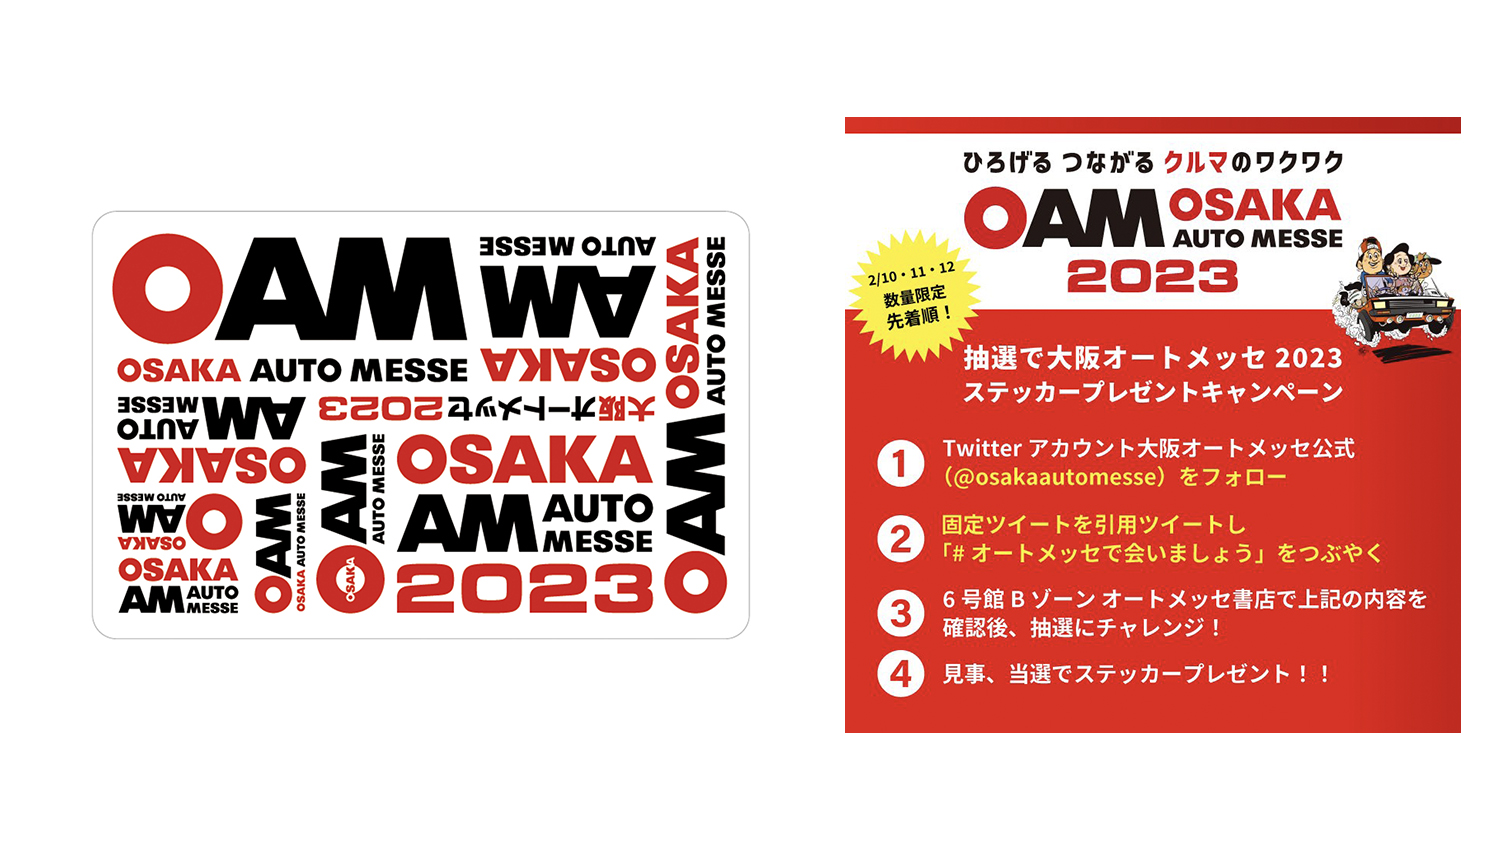 大阪オートメッセ2023にてオリジナルステッカープレゼントキャンペーンを開催